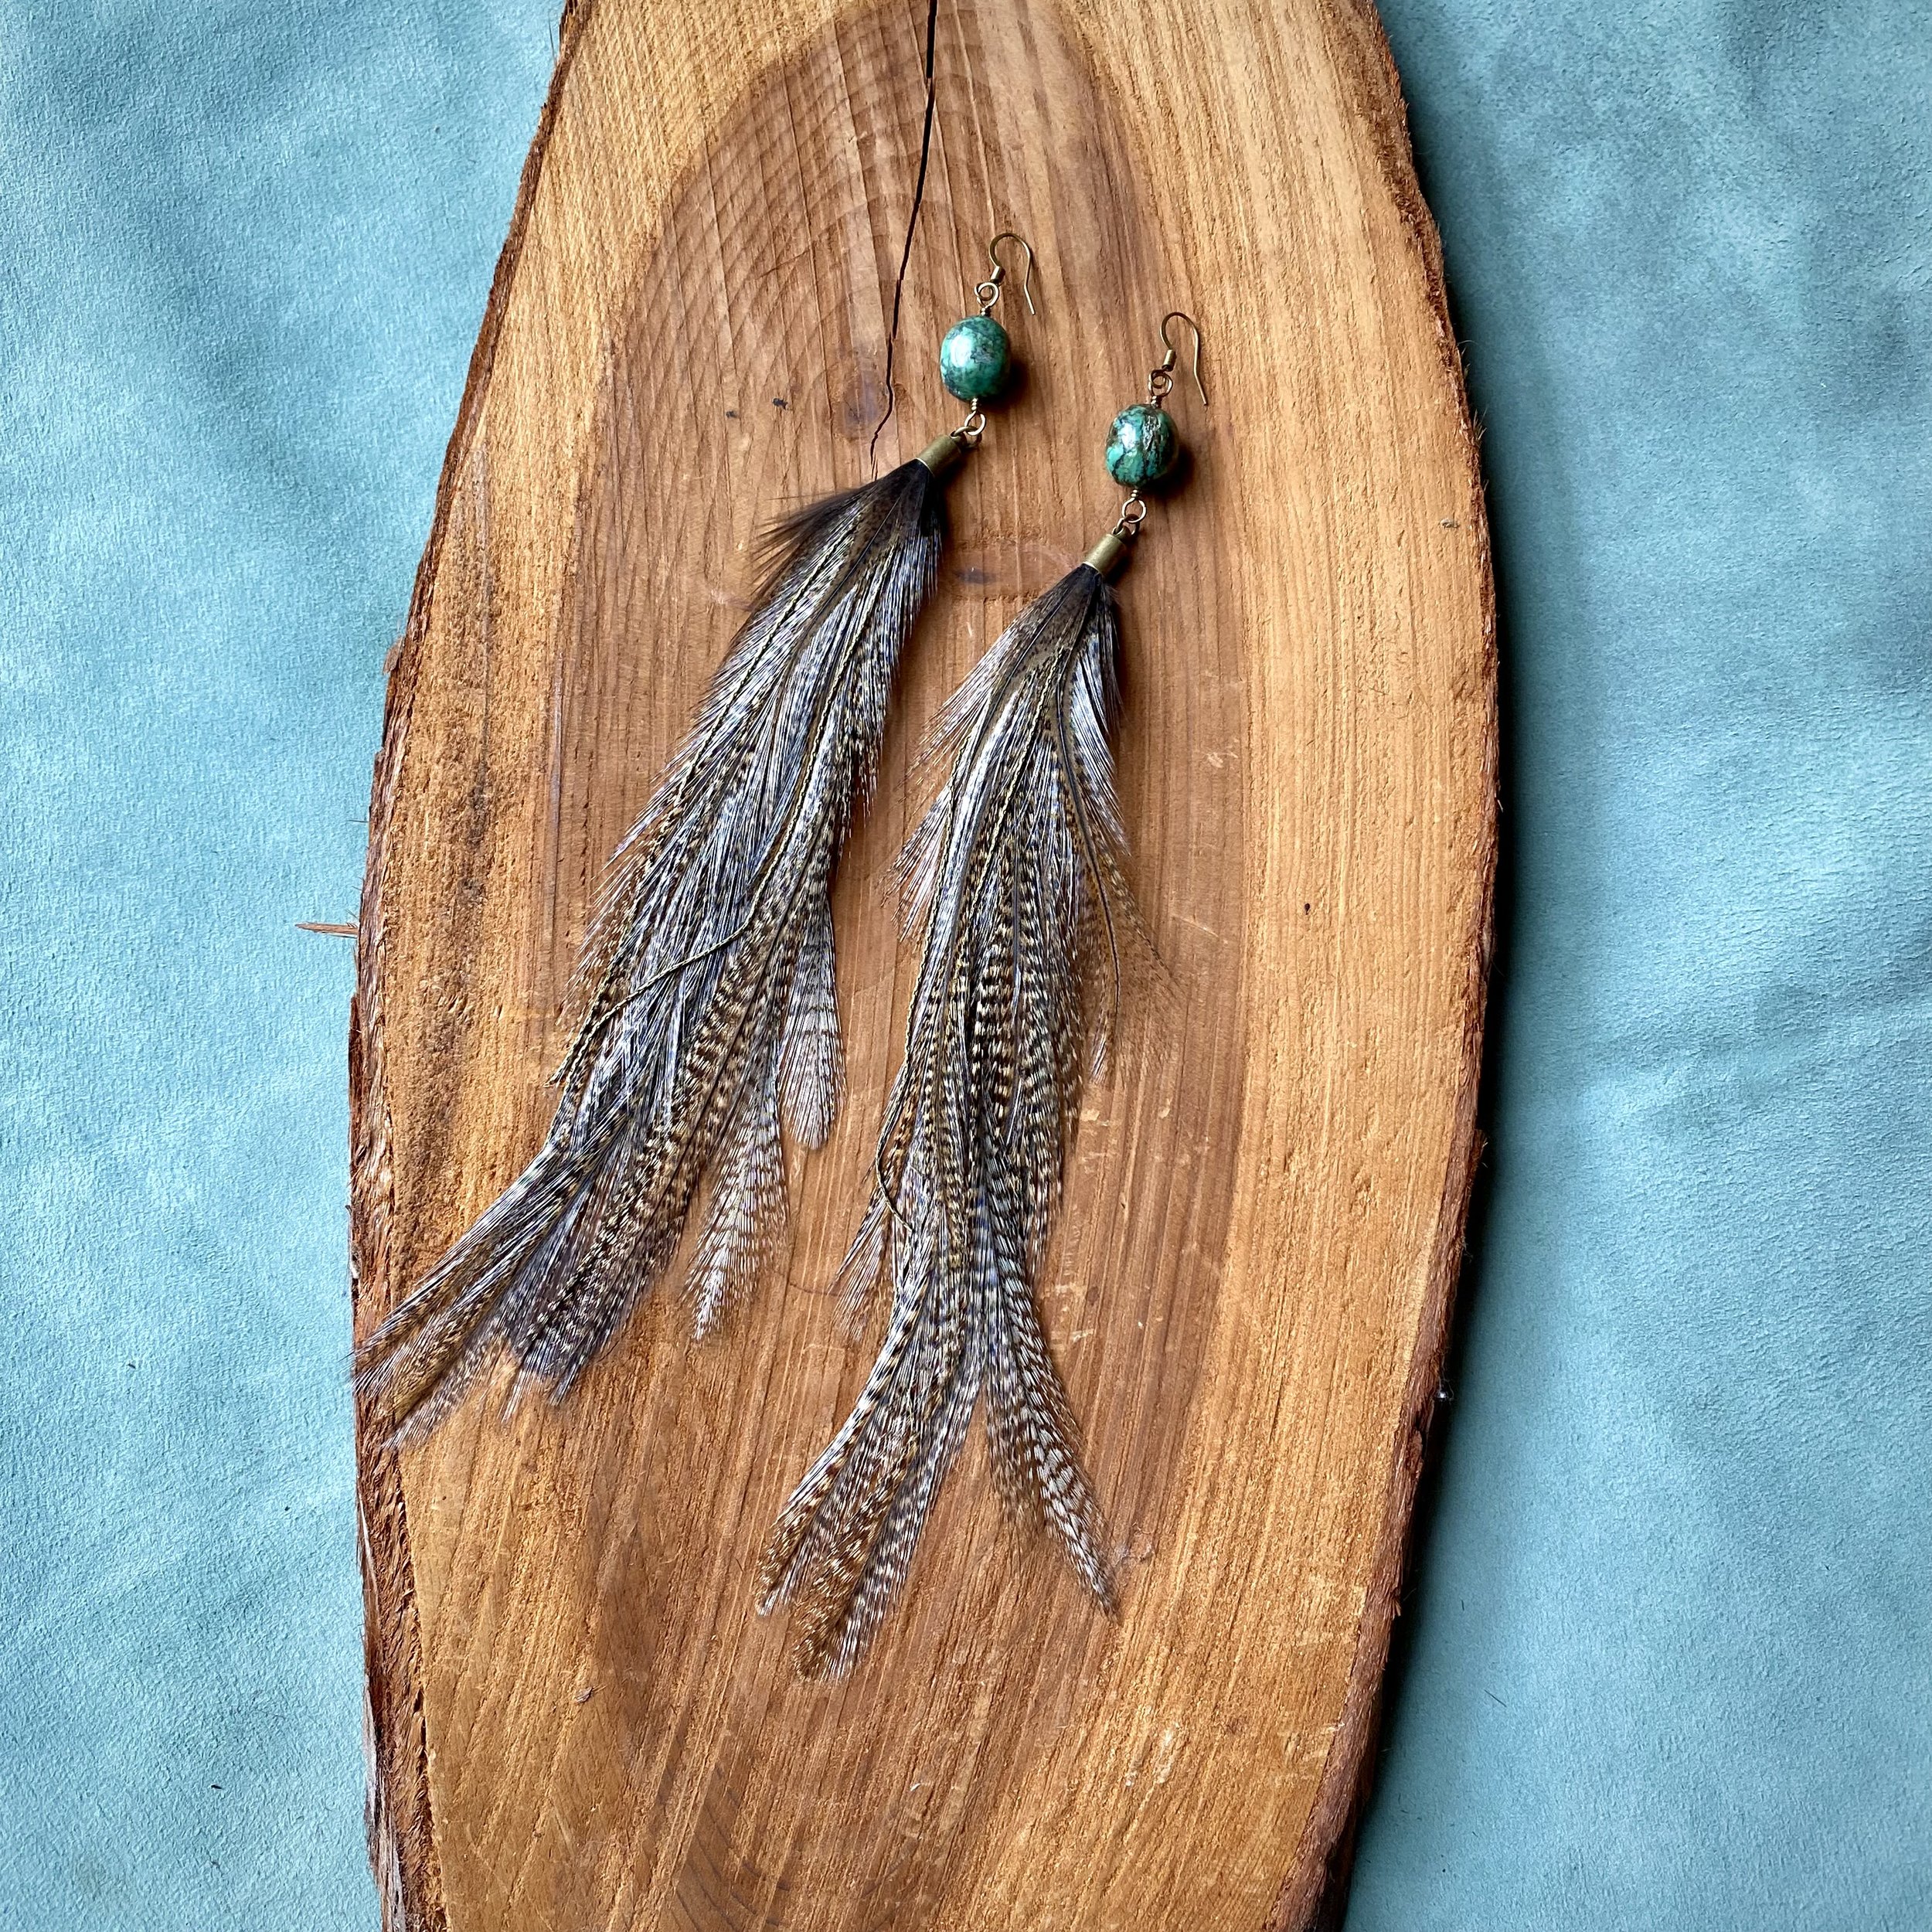 Feather Loc Jewelry – Febe Loc Kingdom